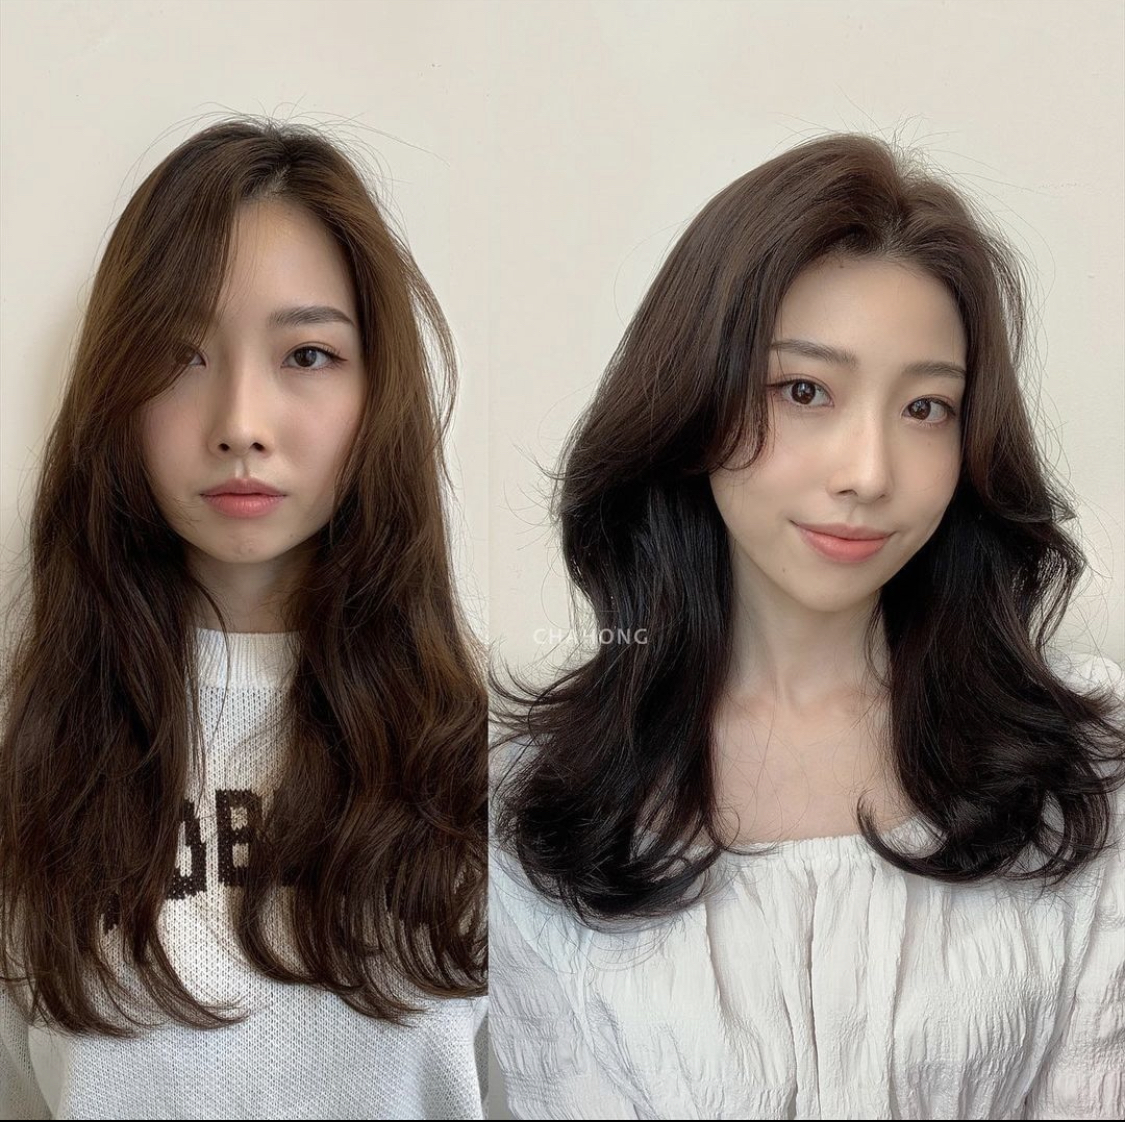 Chỉ cần nhìn vào 2 hình ảnh trước và sau khi thay đổi kiểu tóc cũng có thể thấy tóc dài chính là 'khắc tinh' của những chị em sở hữu gương mặt dài, cằm ngắn.